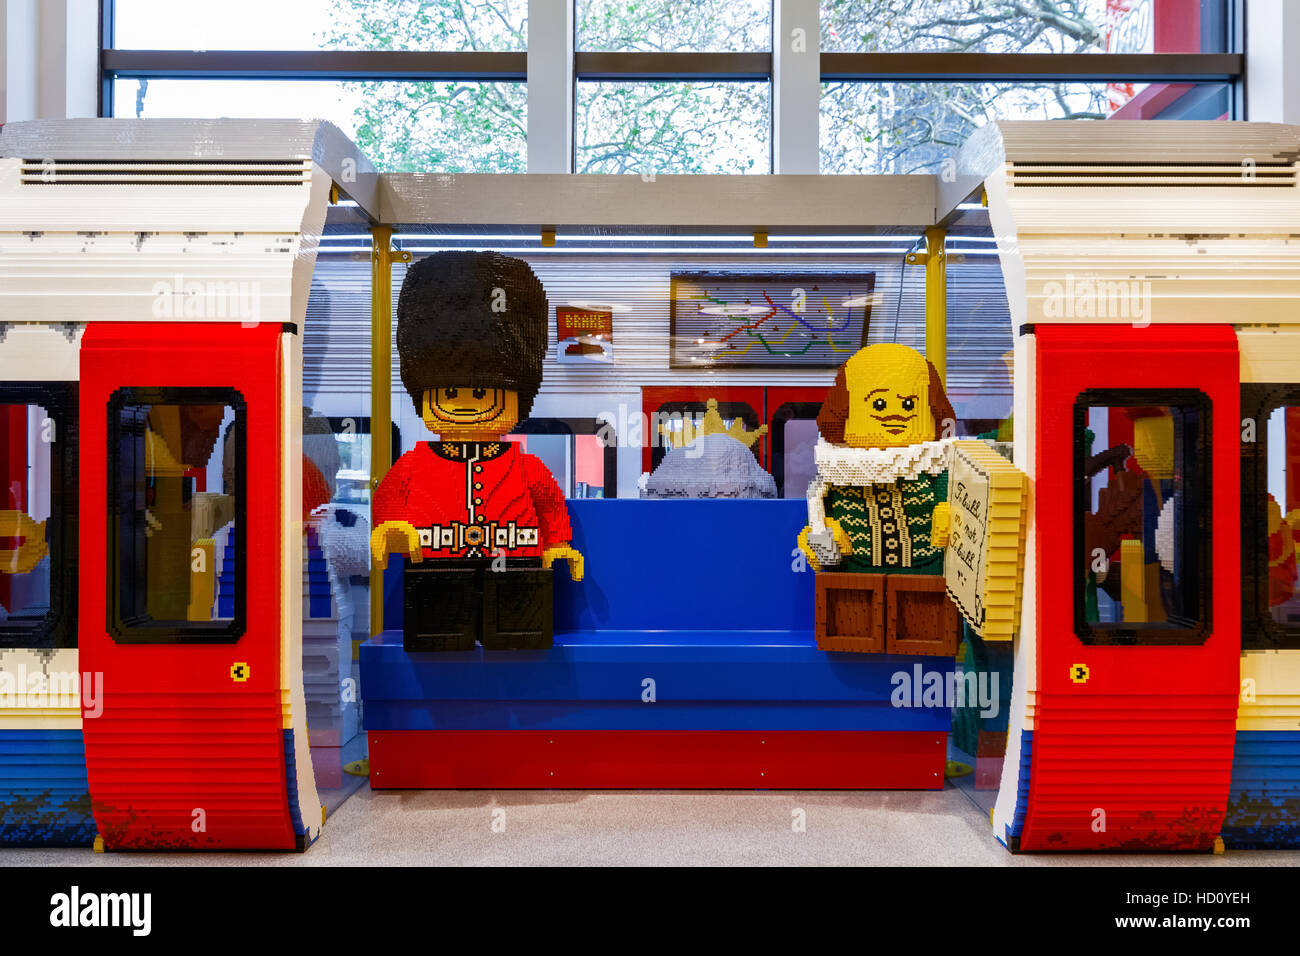 Londres, Royaume-Uni - 22 novembre 2016 - le métro de Londres construit à partir de briques LEGO, affiché dans le plus grand magasin LEGO Banque D'Images